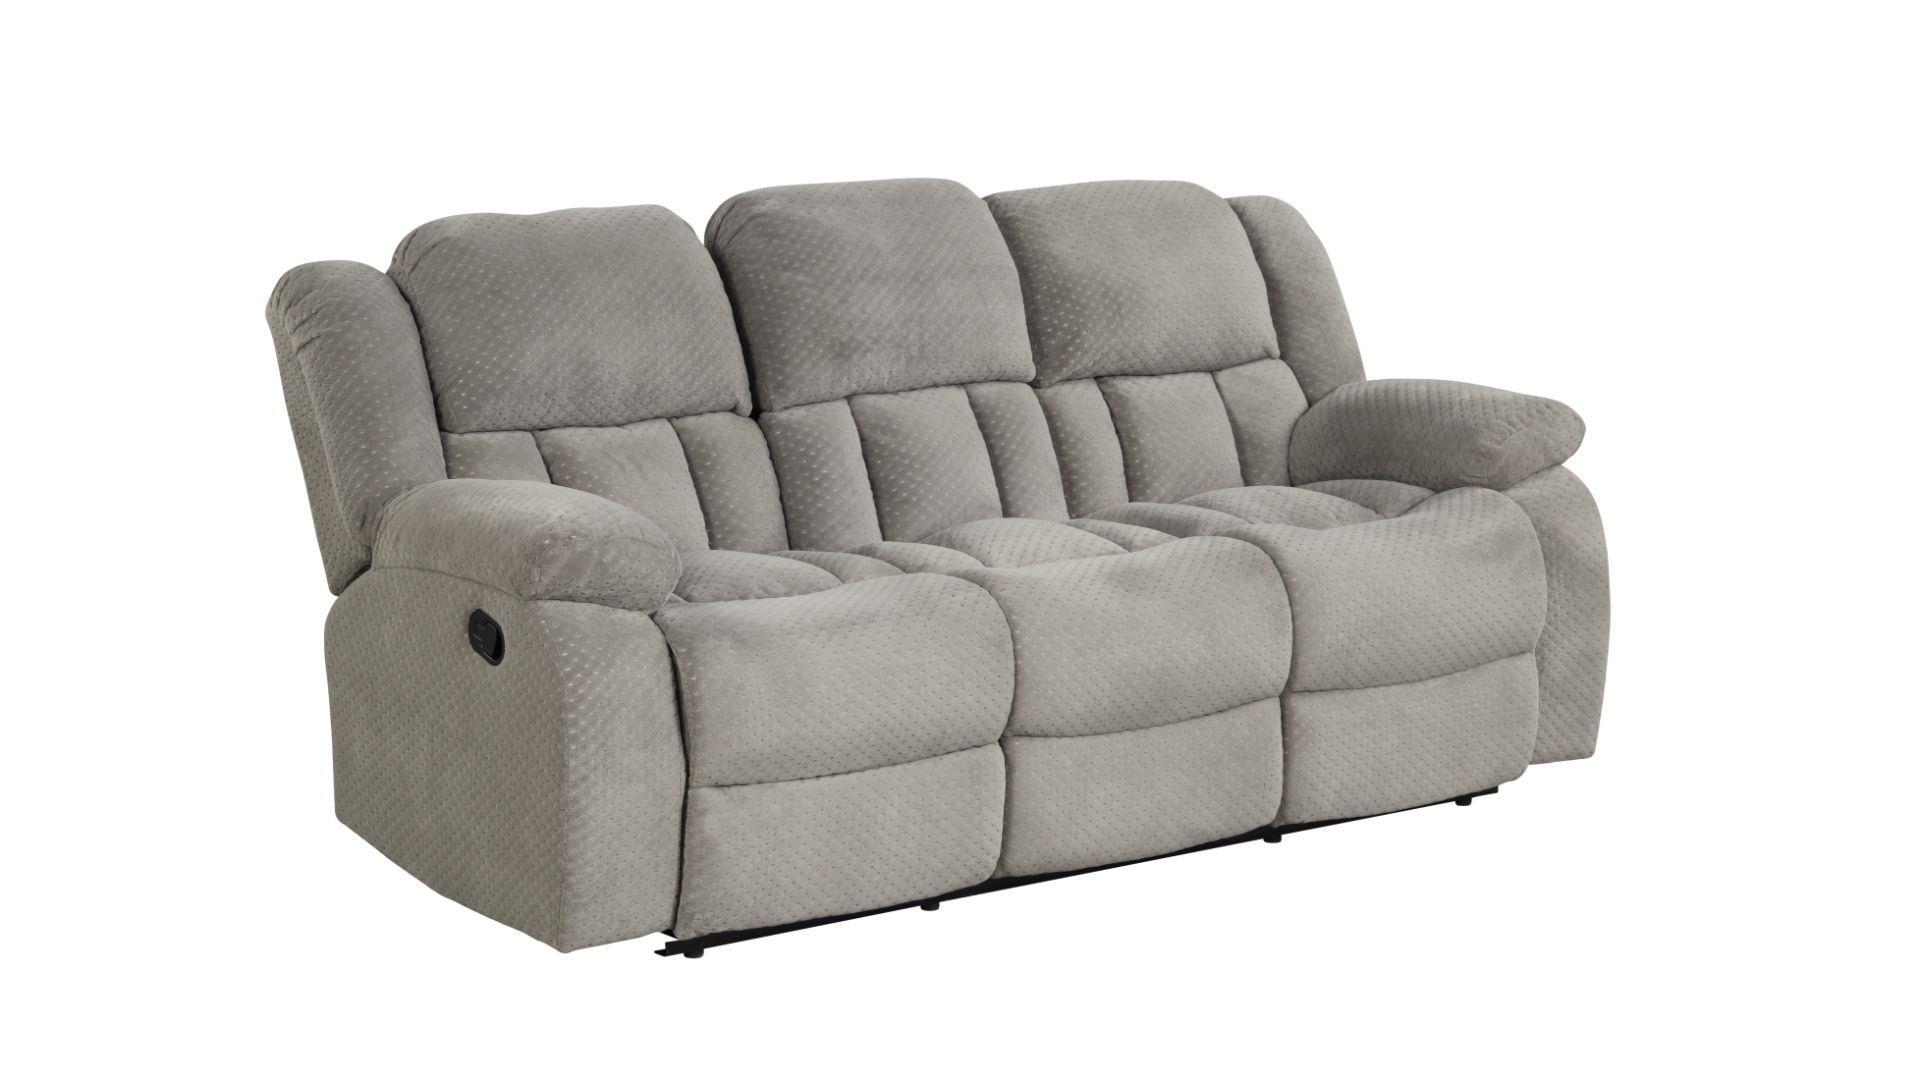 Contemporary, Modern Recliner Sofa ARMADA Ice Gray ARMADA-GR-S in Gray Chenille